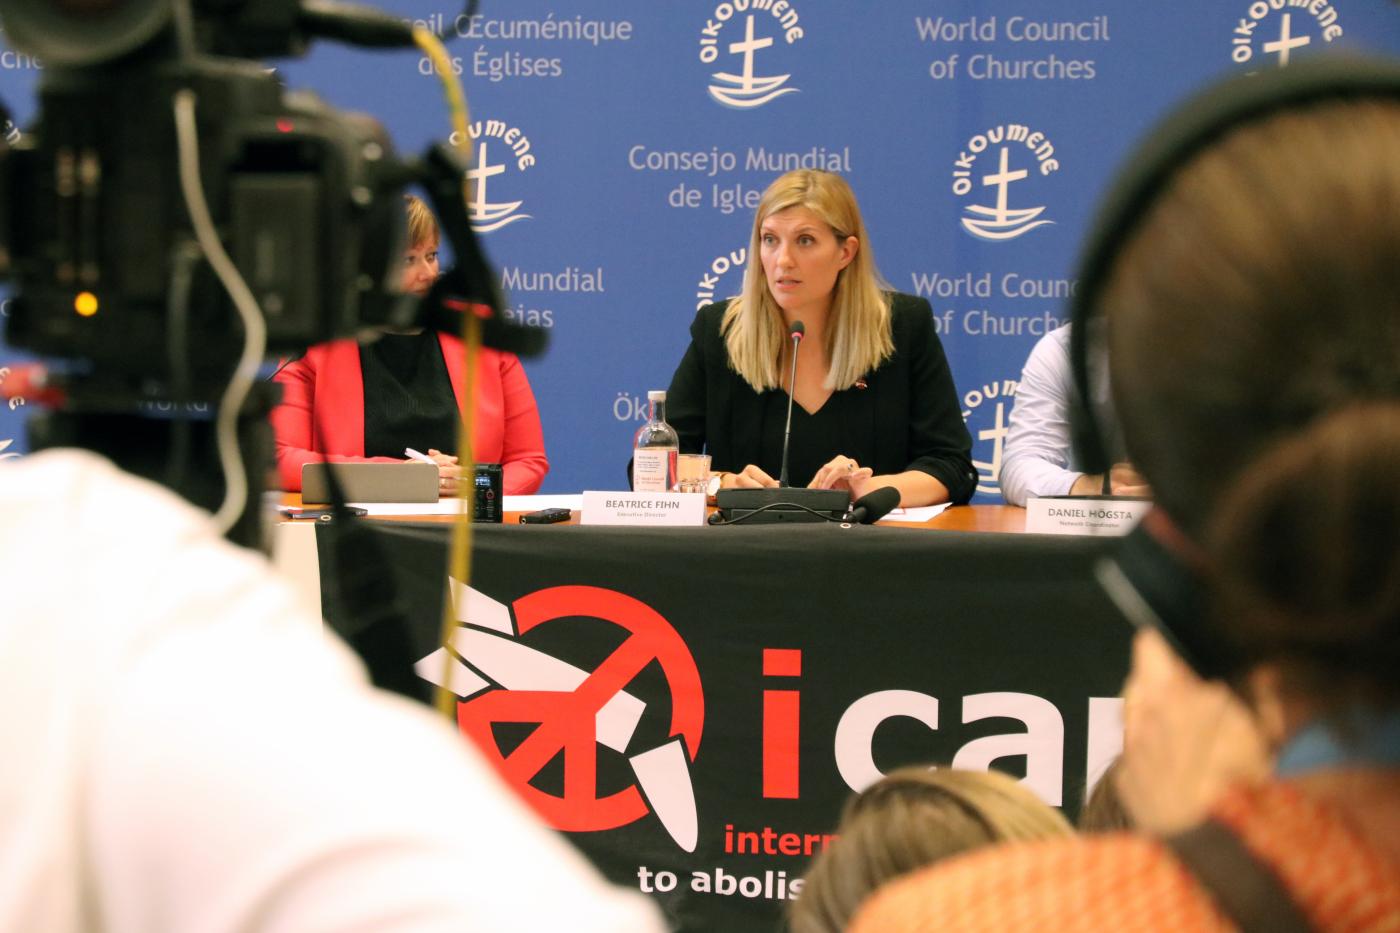 La directora ejecutiva de la ICAN, Beatrice Fihn, en la conferencia de prensa que tuvo lugar en el Centro Ecuménico. Foto: ©Ivars Kupcis/CMI